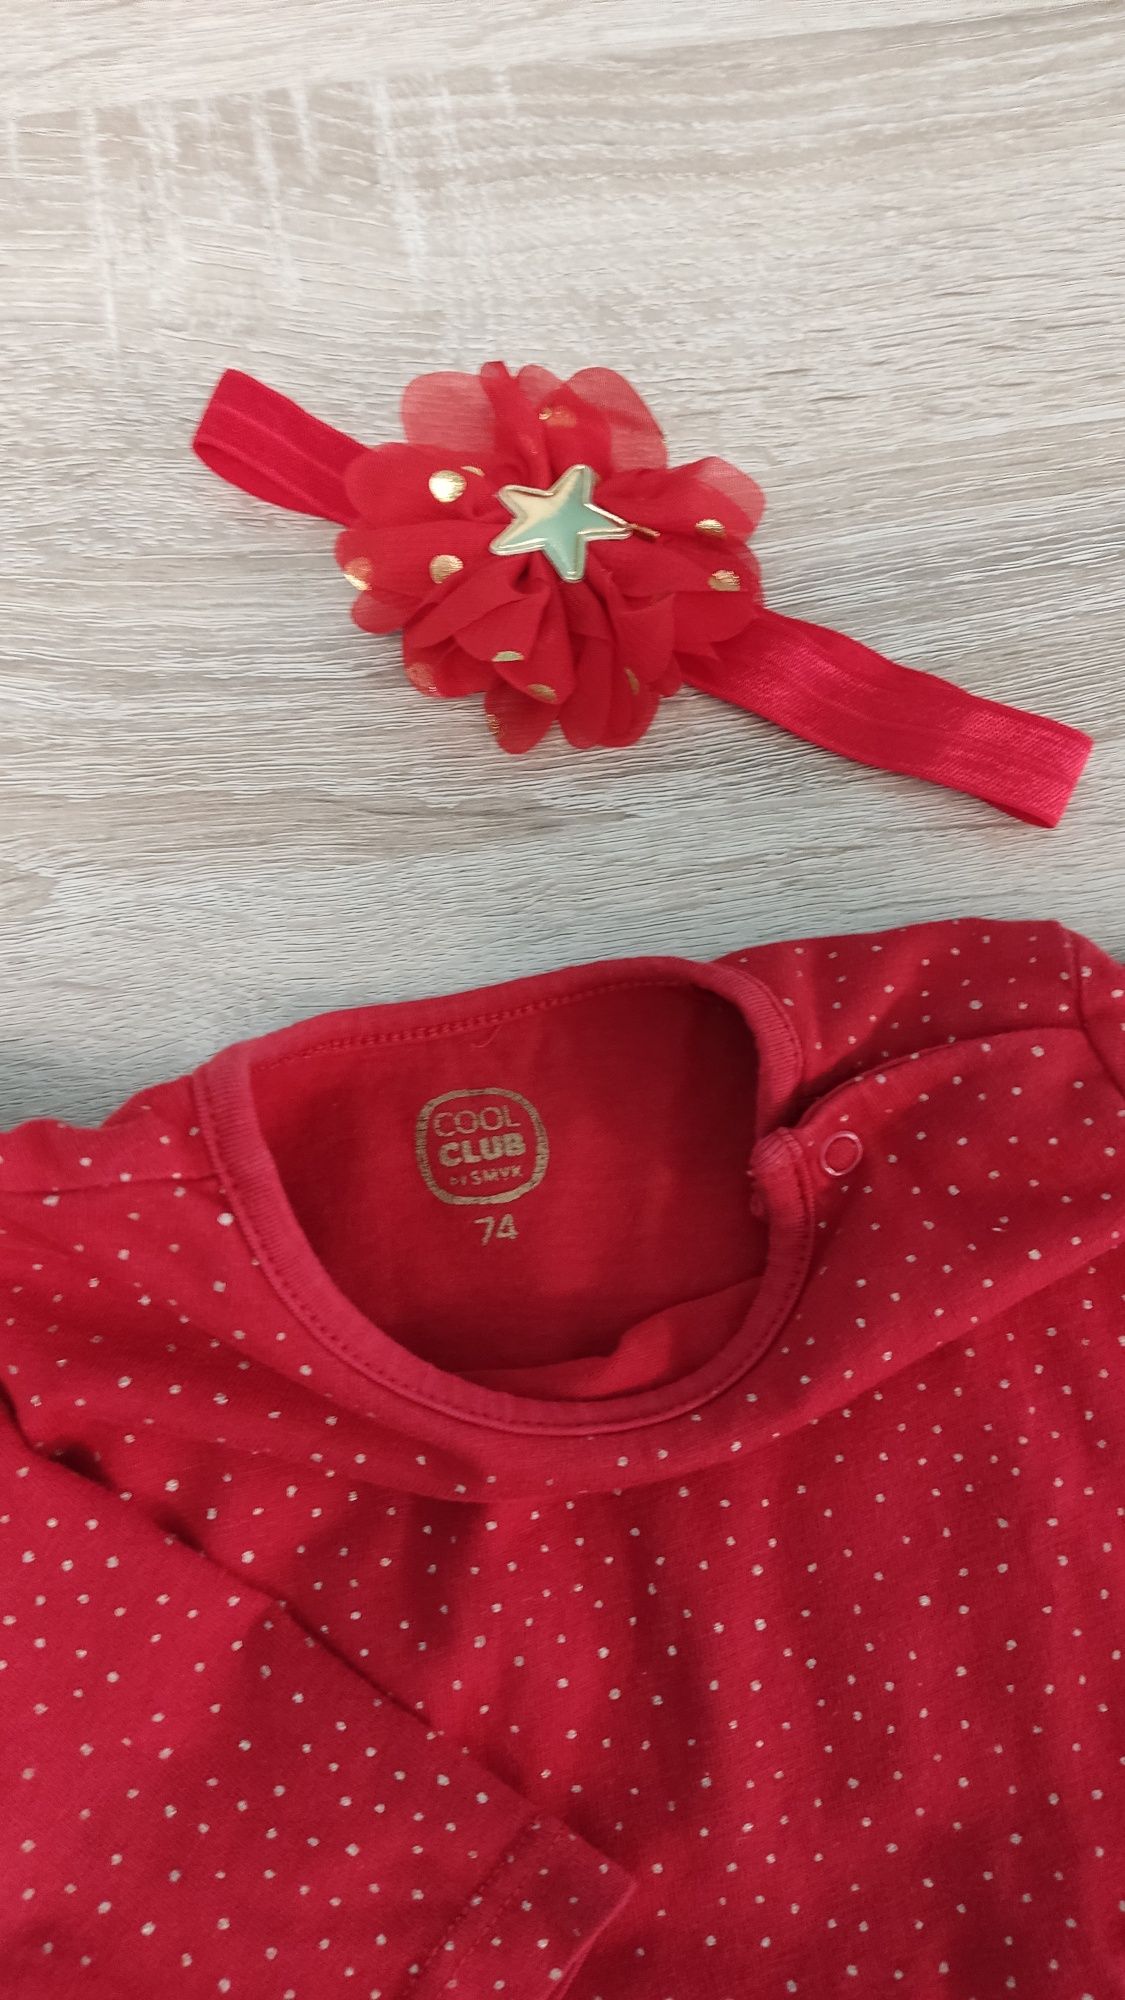 Komplet świąteczny zestaw czerwona sukienka i opaska 74 Cool Club